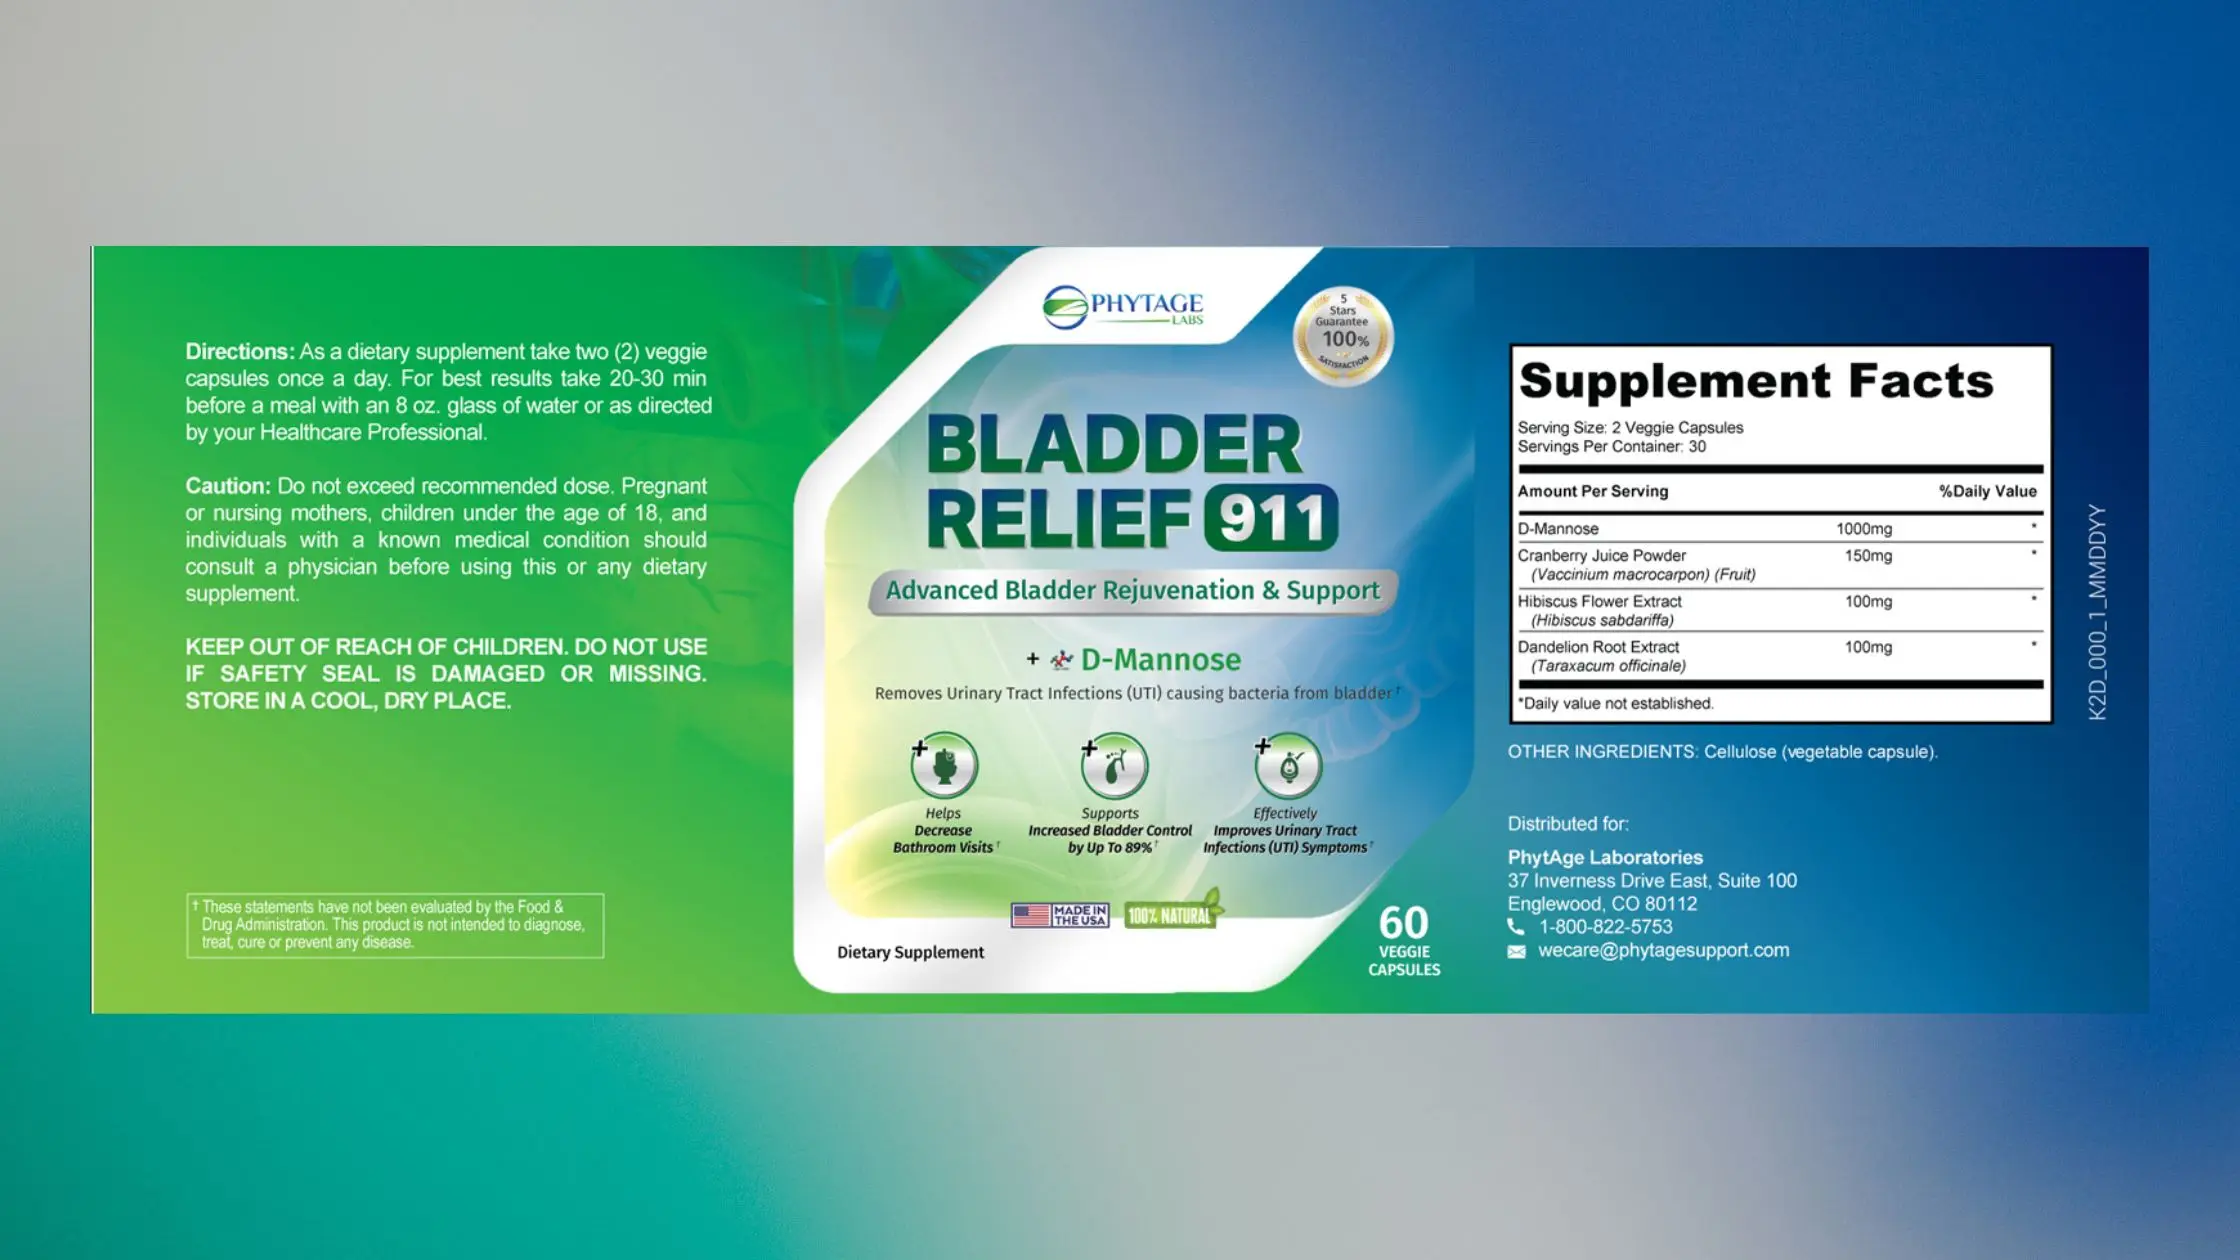 Bladder Relief 911 Supplement Facts